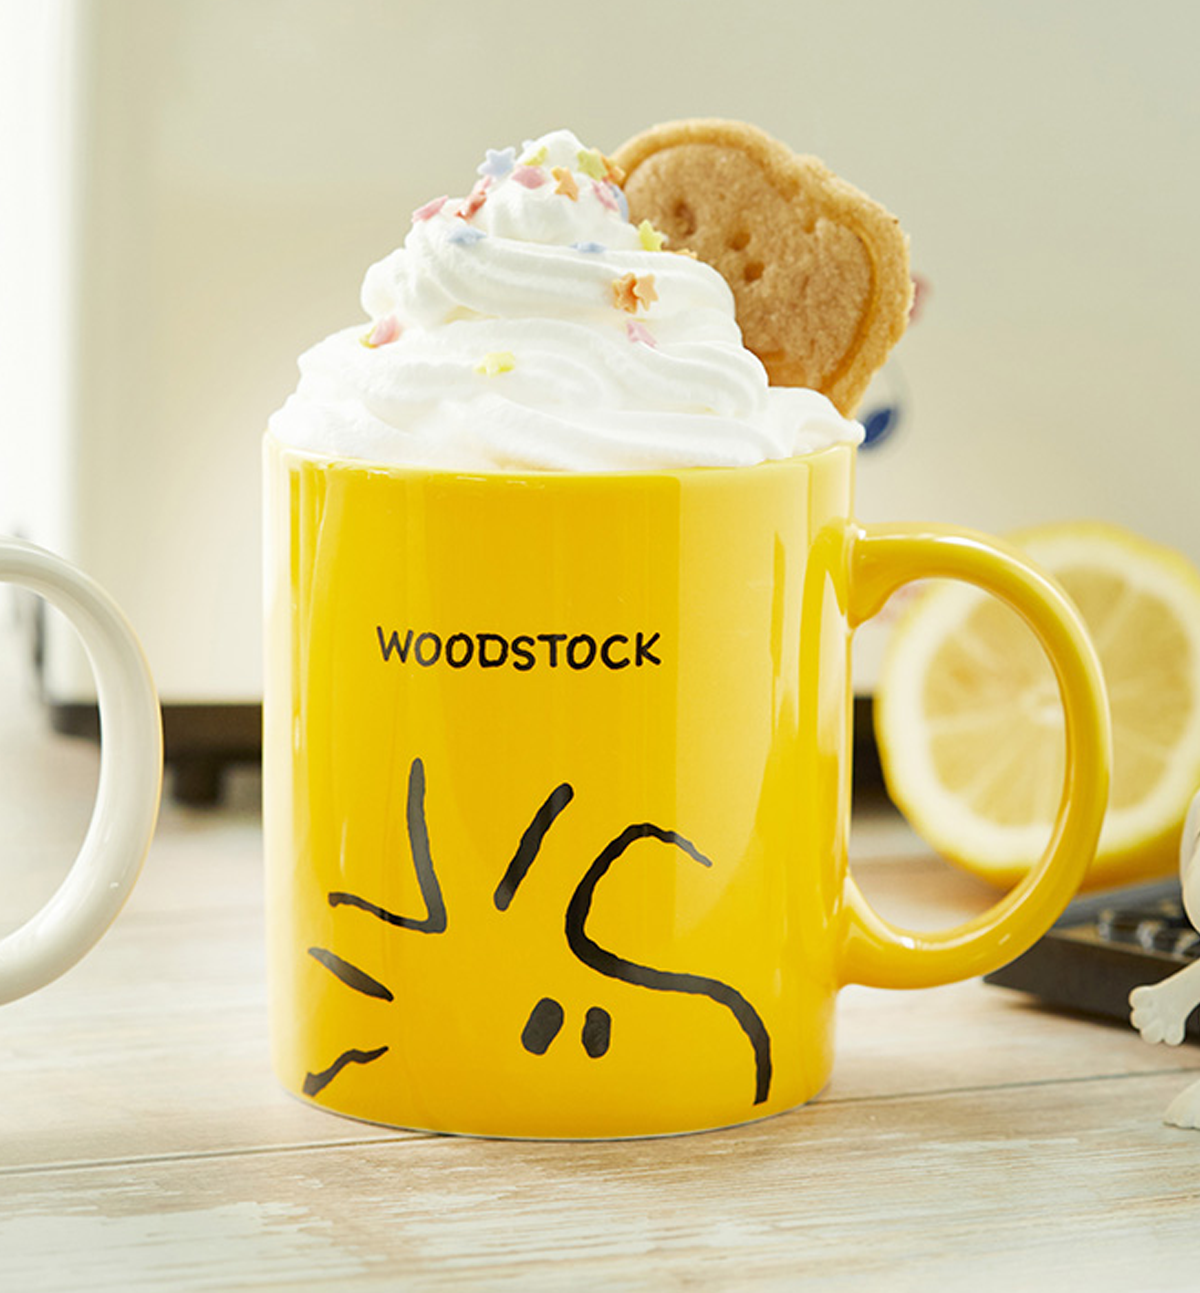 Snoopy & Woodstock Face Mug Set [2 Mugs]